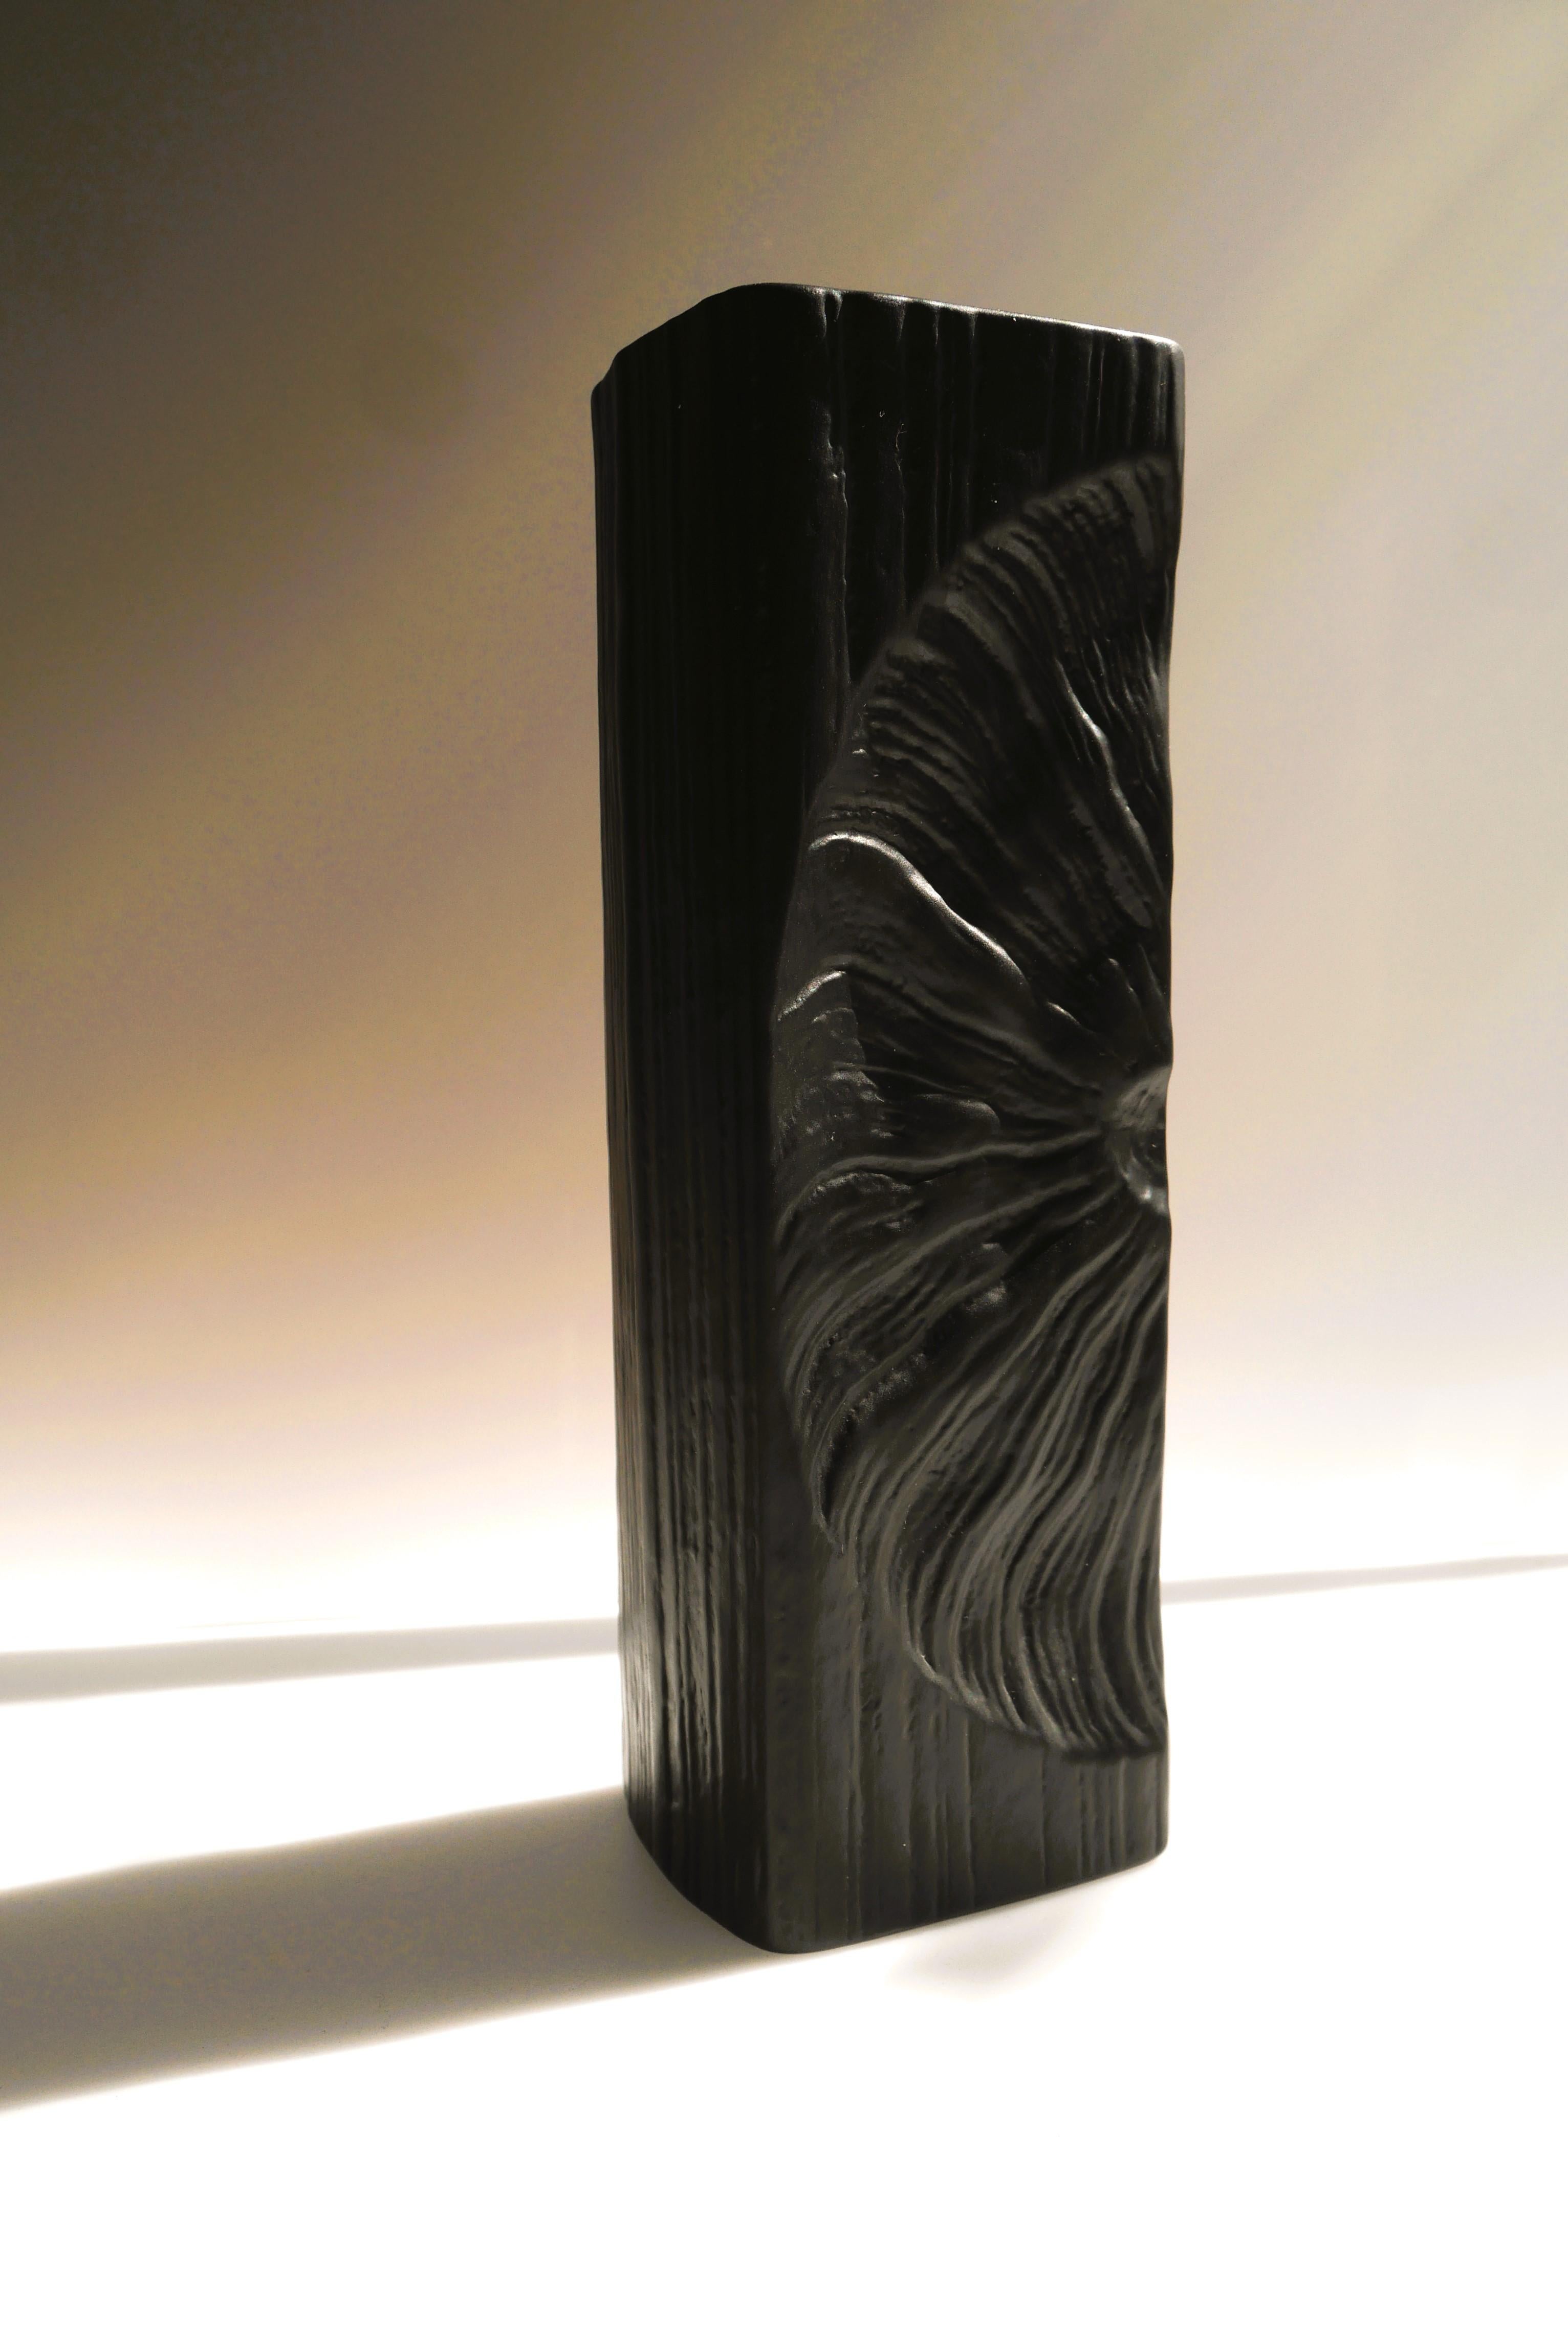 Un fantastique vase Op-Art en porcelaine bisque du Studio line Rosenthal réalisé par le talentueux Martin Freyer, Allemagne. Un assez grand vase en céramique noire au design incroyable. Le vase est une œuvre d'art. Il présente des motifs imprimés